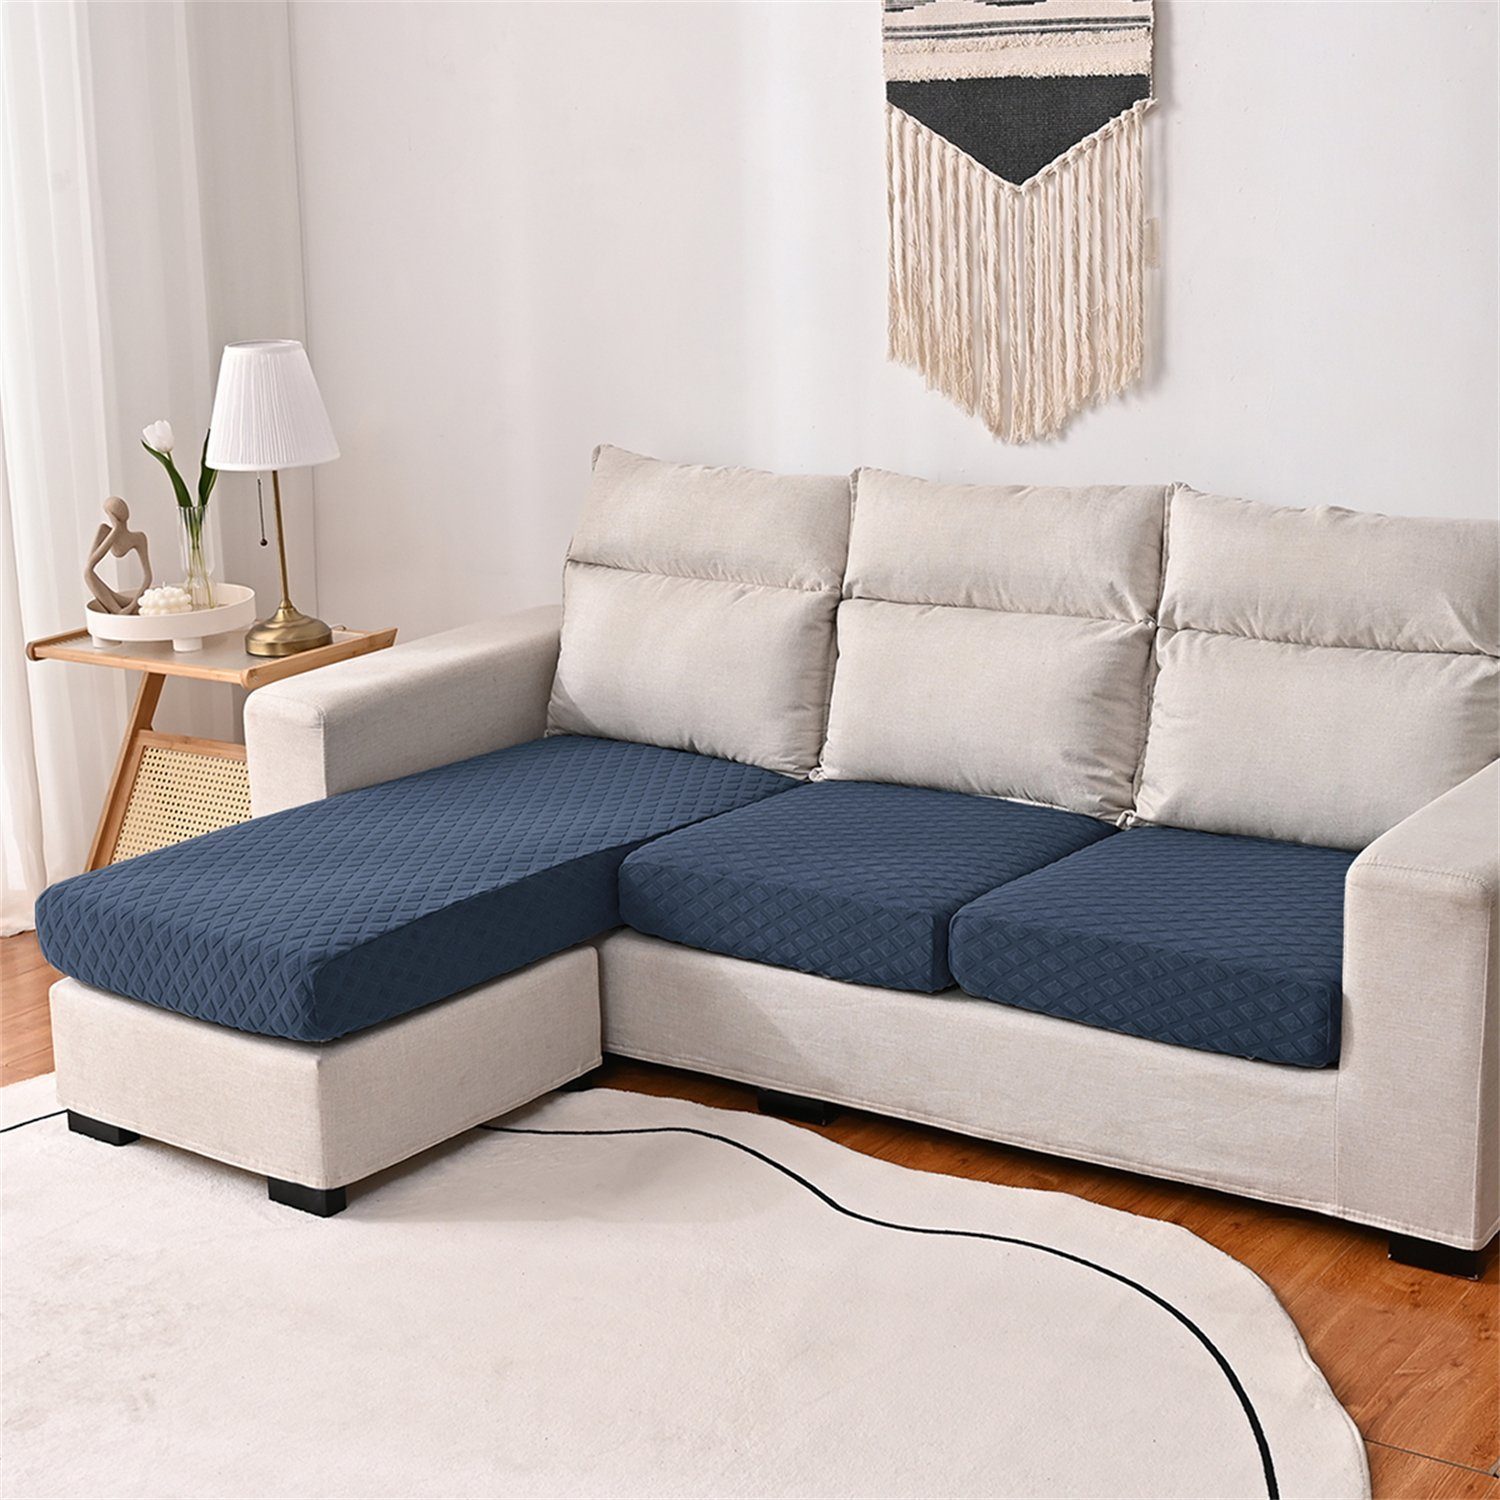 3DMuster Sofa-Sitzbezug wasserfest HOMEIDEAS, elastischer mit Navy Sofahusse, Blau